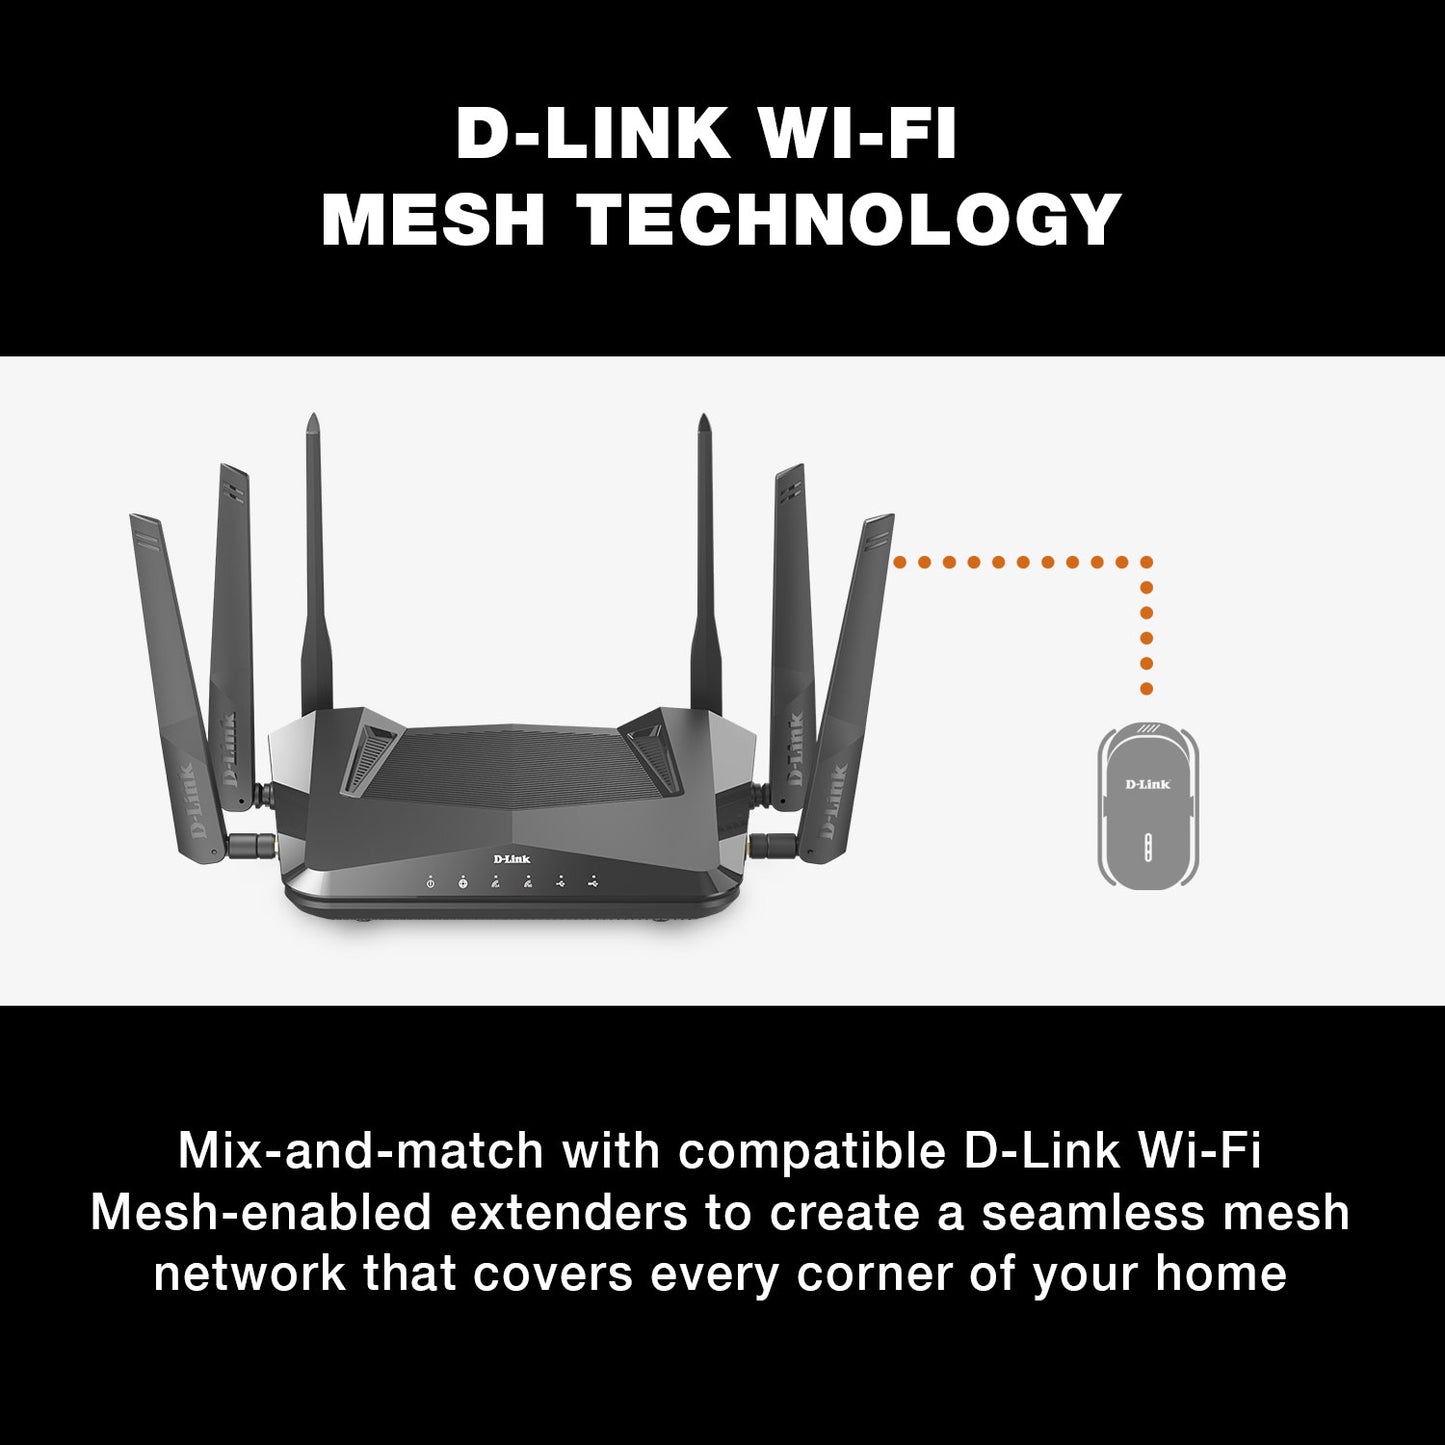 EXO AX AX4800 Mesh Wi-Fi 6 Router - DIR-X4860